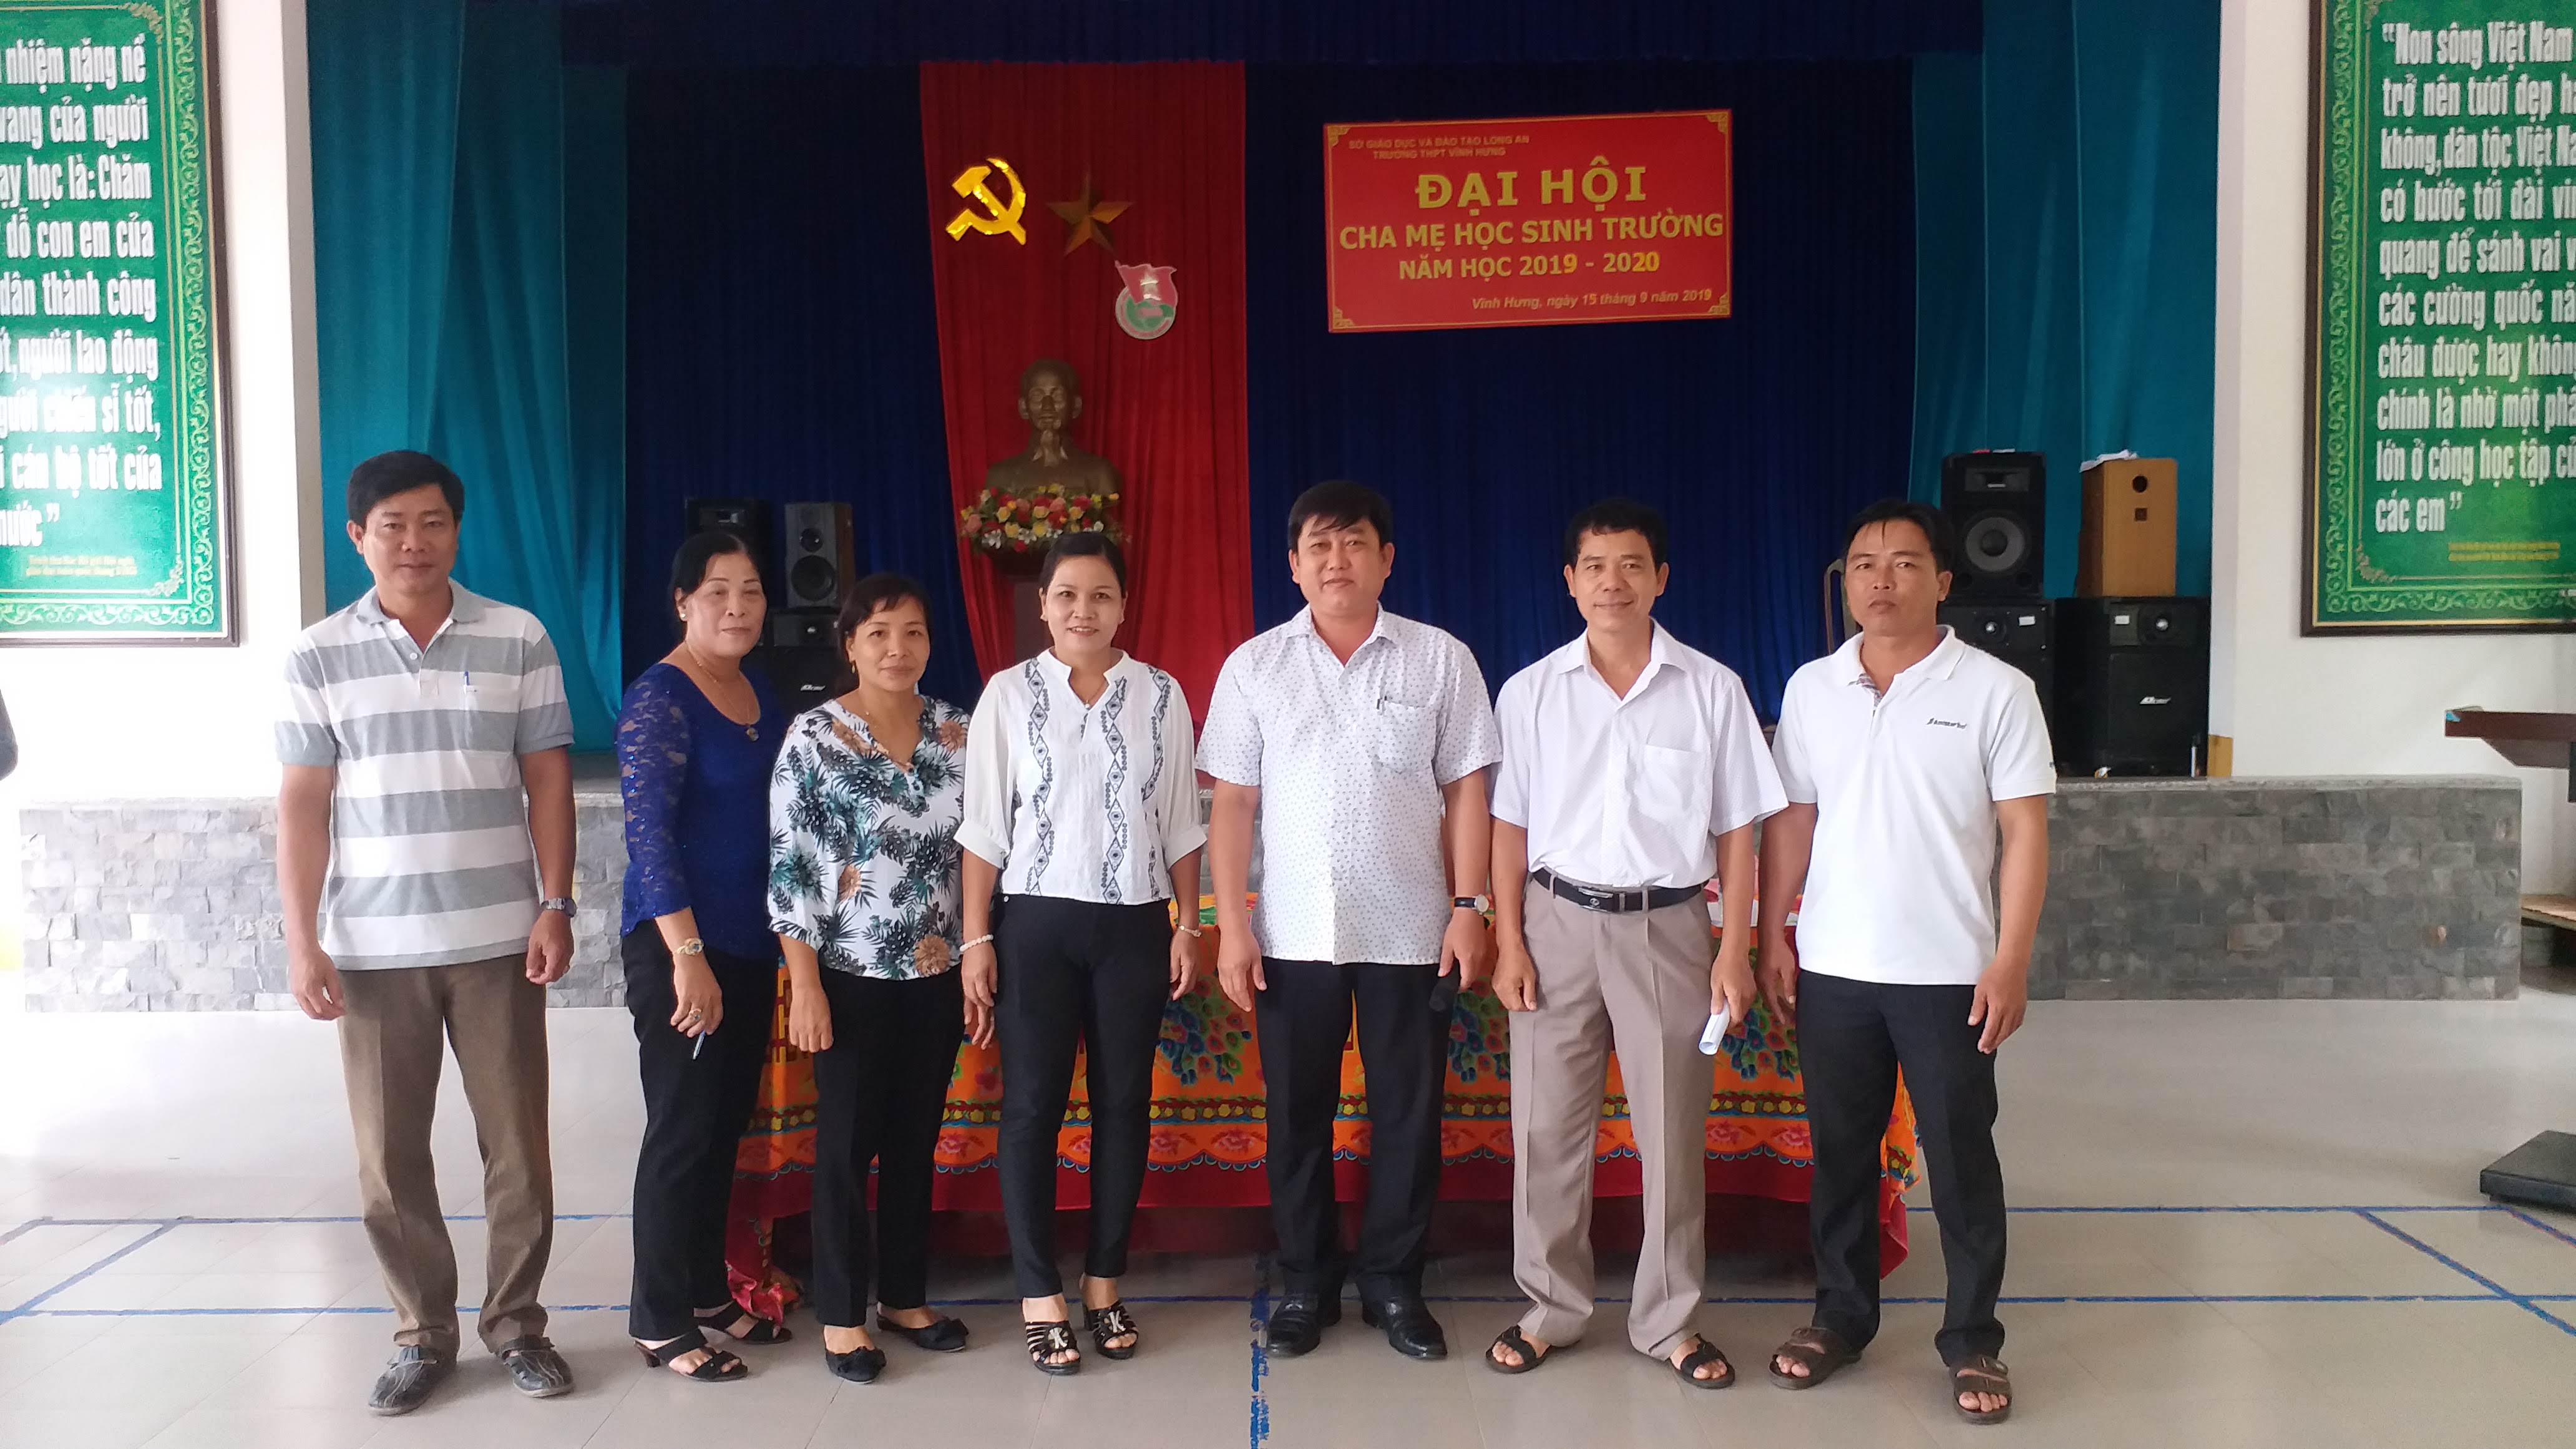 Đại hội CMHS trường THPT Vĩnh Hưng nhiệm kỳ 2019 - 2020